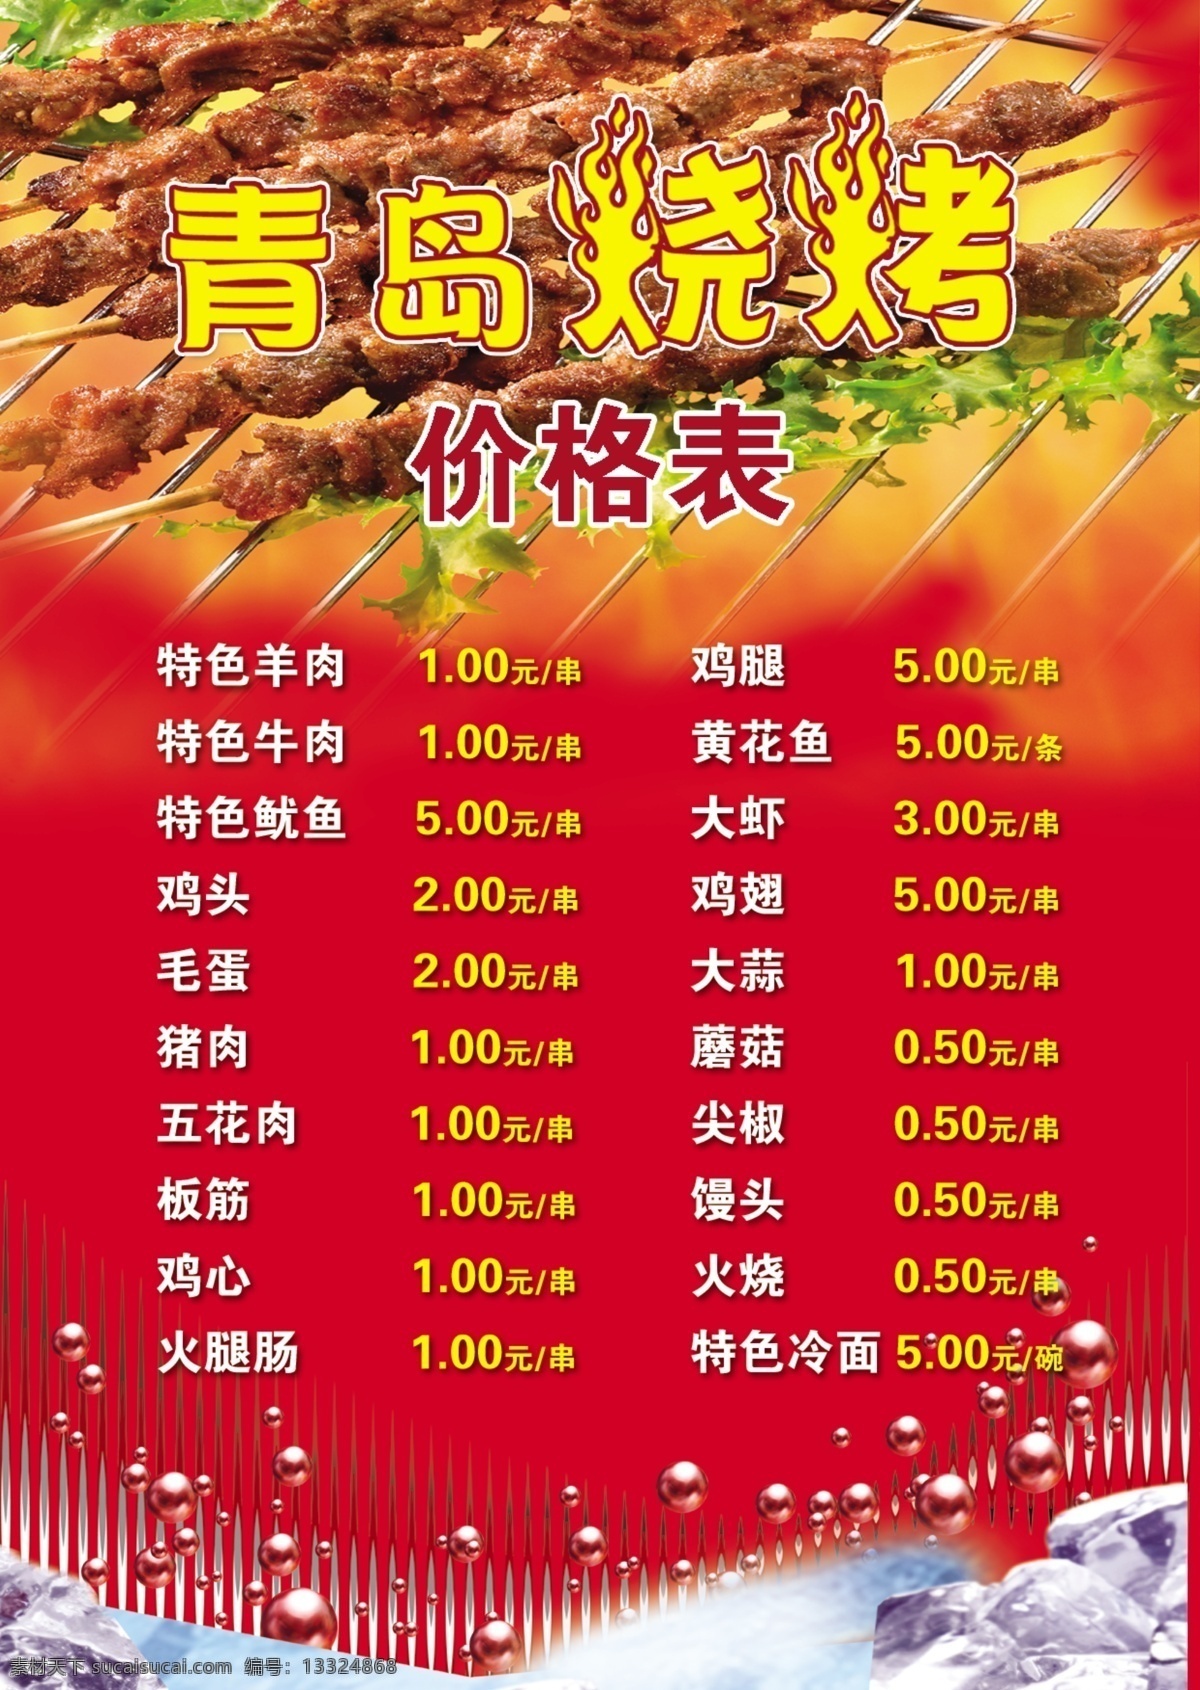 烧烤价格表 价格表 红色 烧烤 喜庆 广告宣传海报 分层 源文件